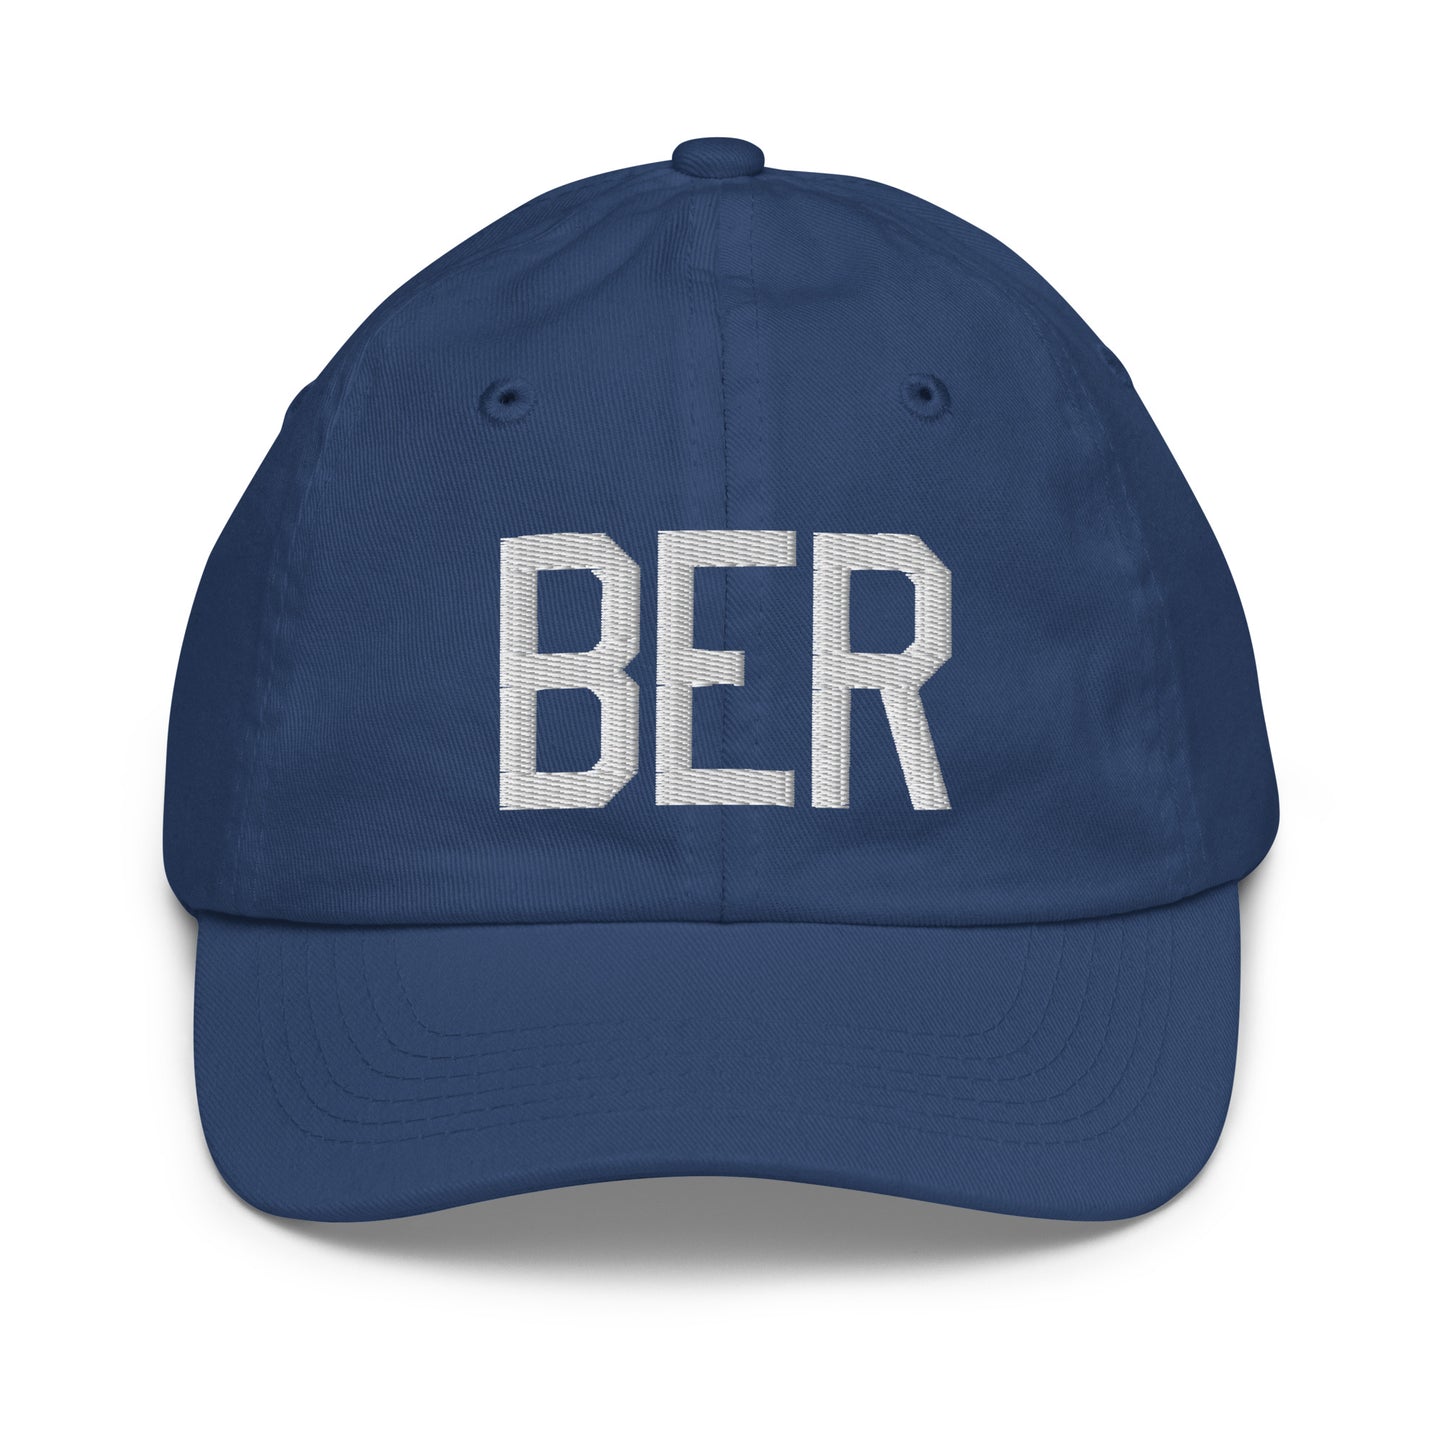 Airport Code Kid's Baseball Cap - White • BER Berlin • YHM Designs - Image 20